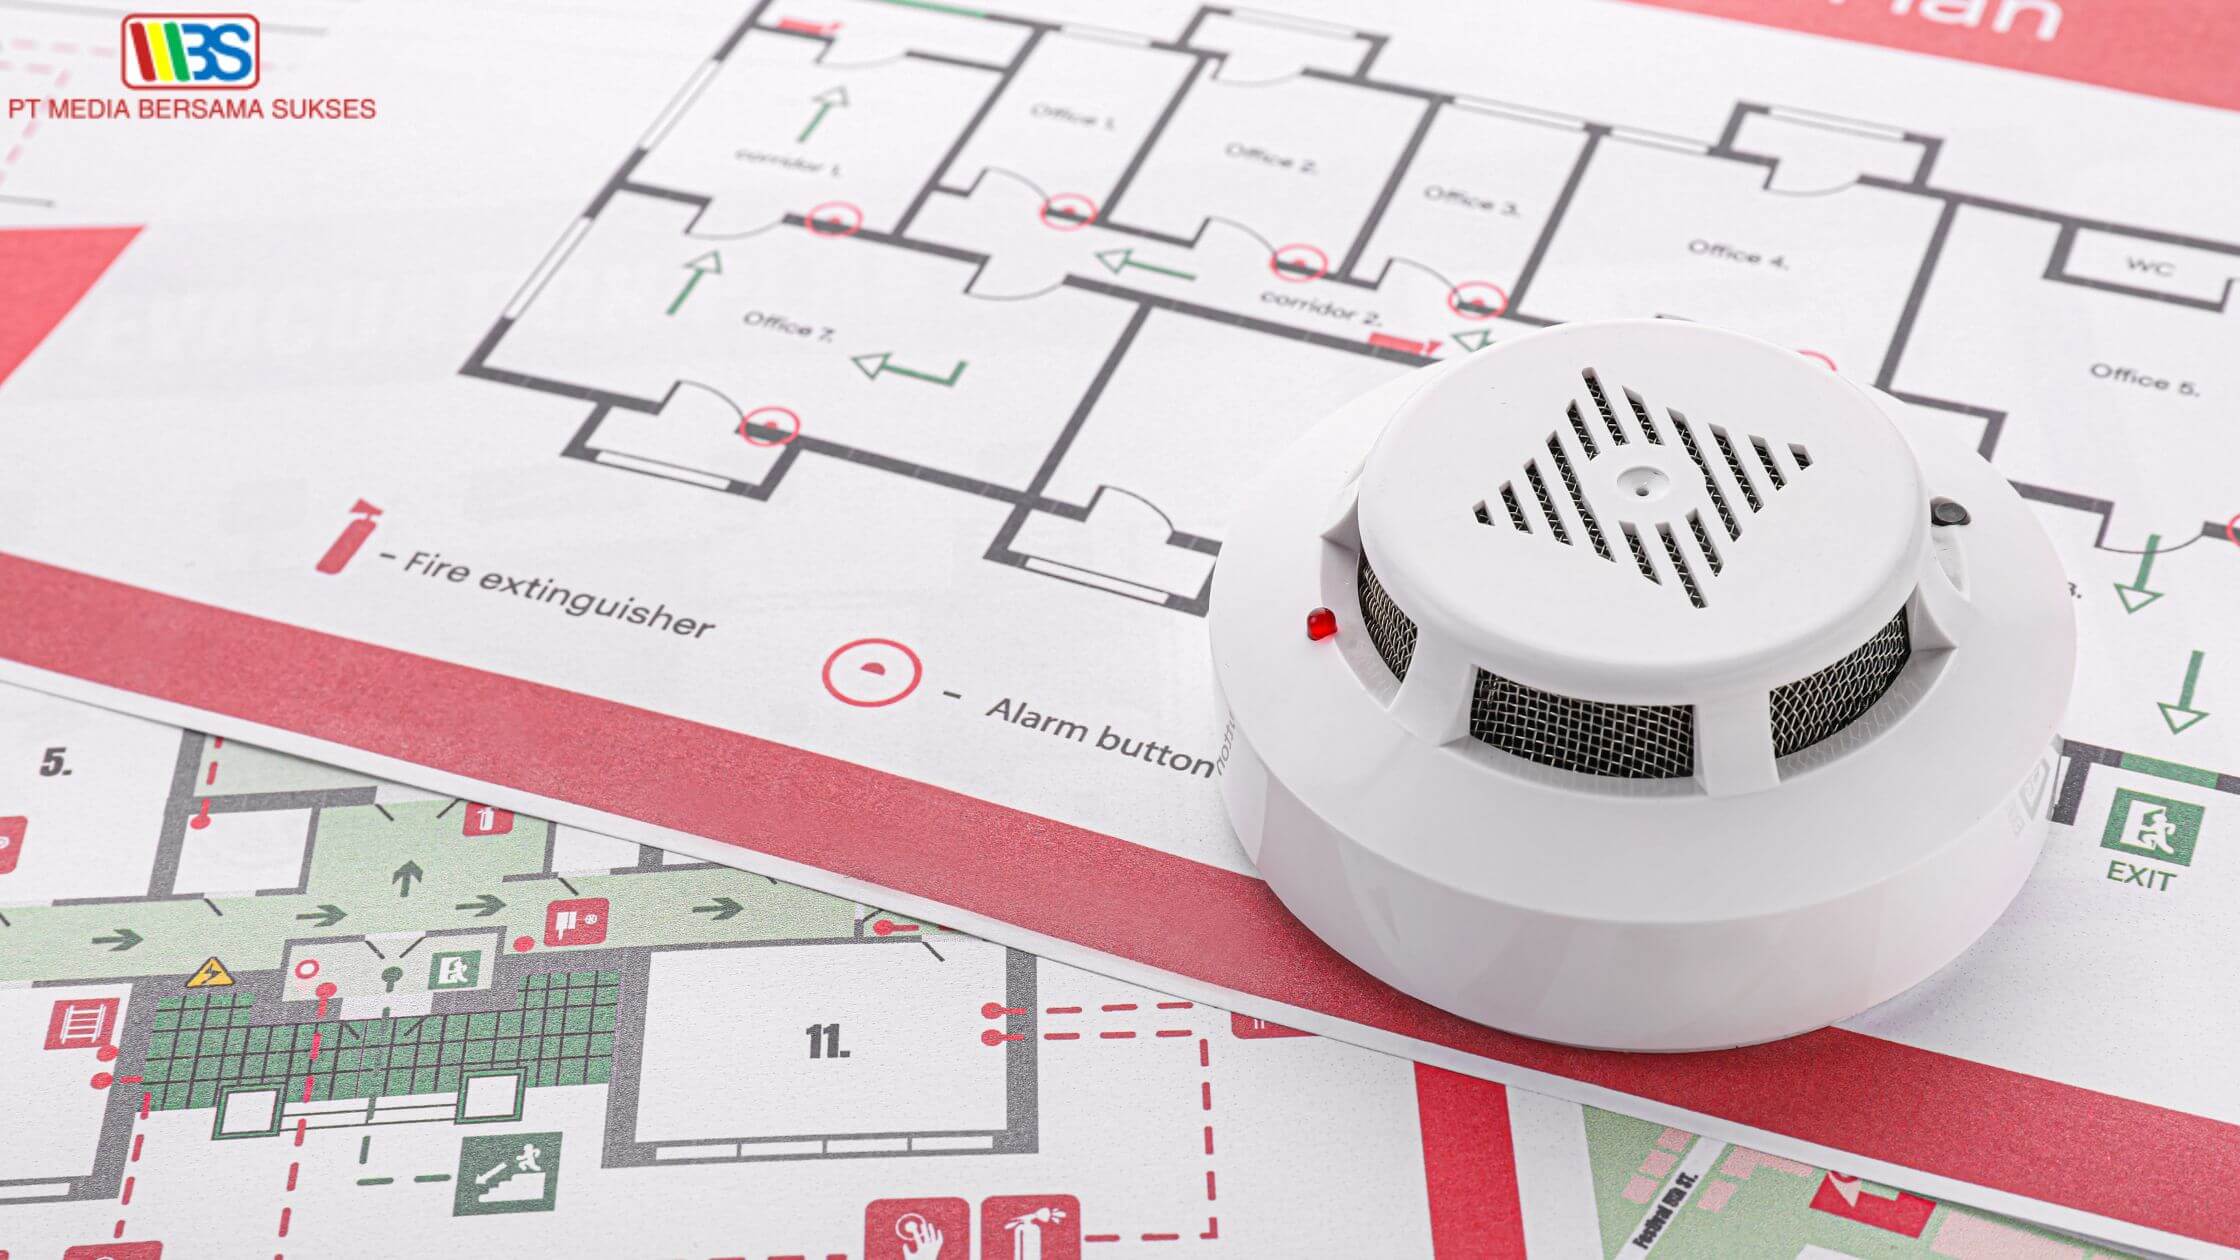 Tingkatkan Keamanan Bangunan dengan Sensor Fire Alarm Berkualitas